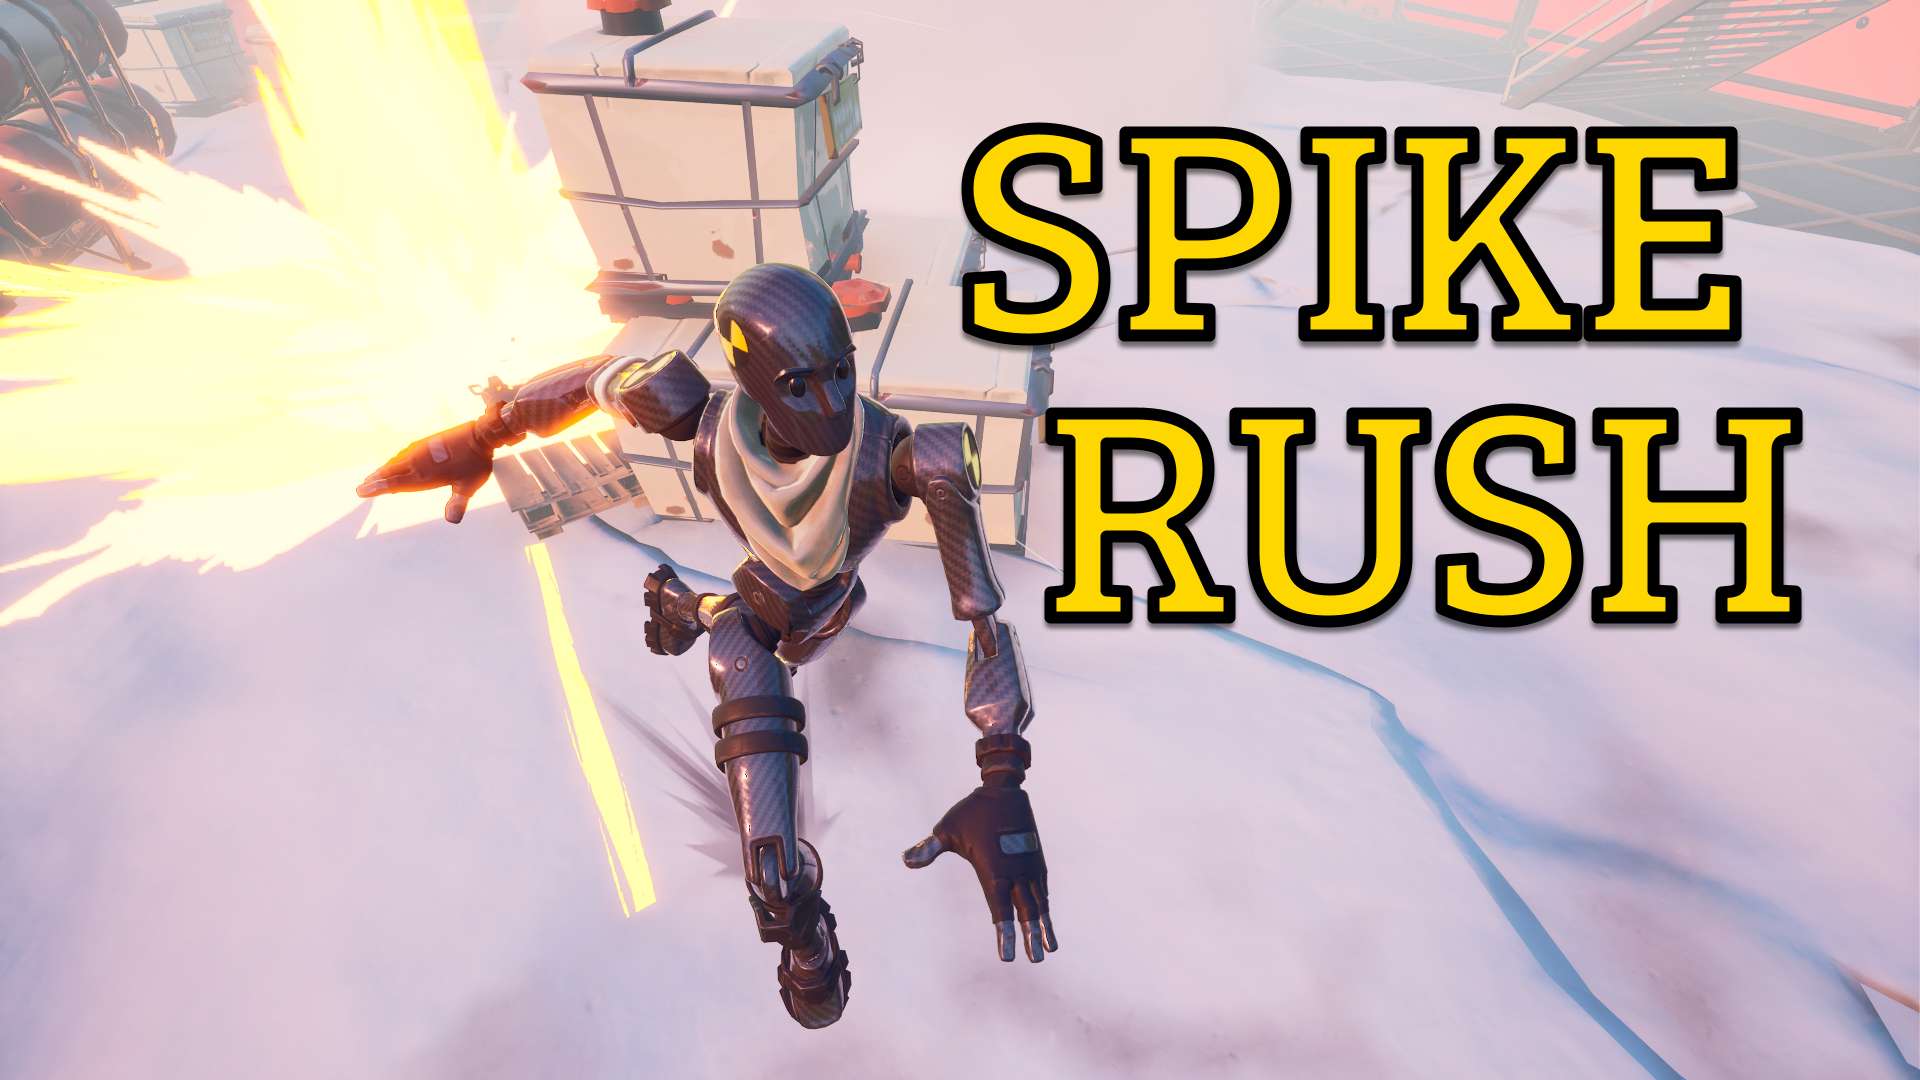 Spike Rush